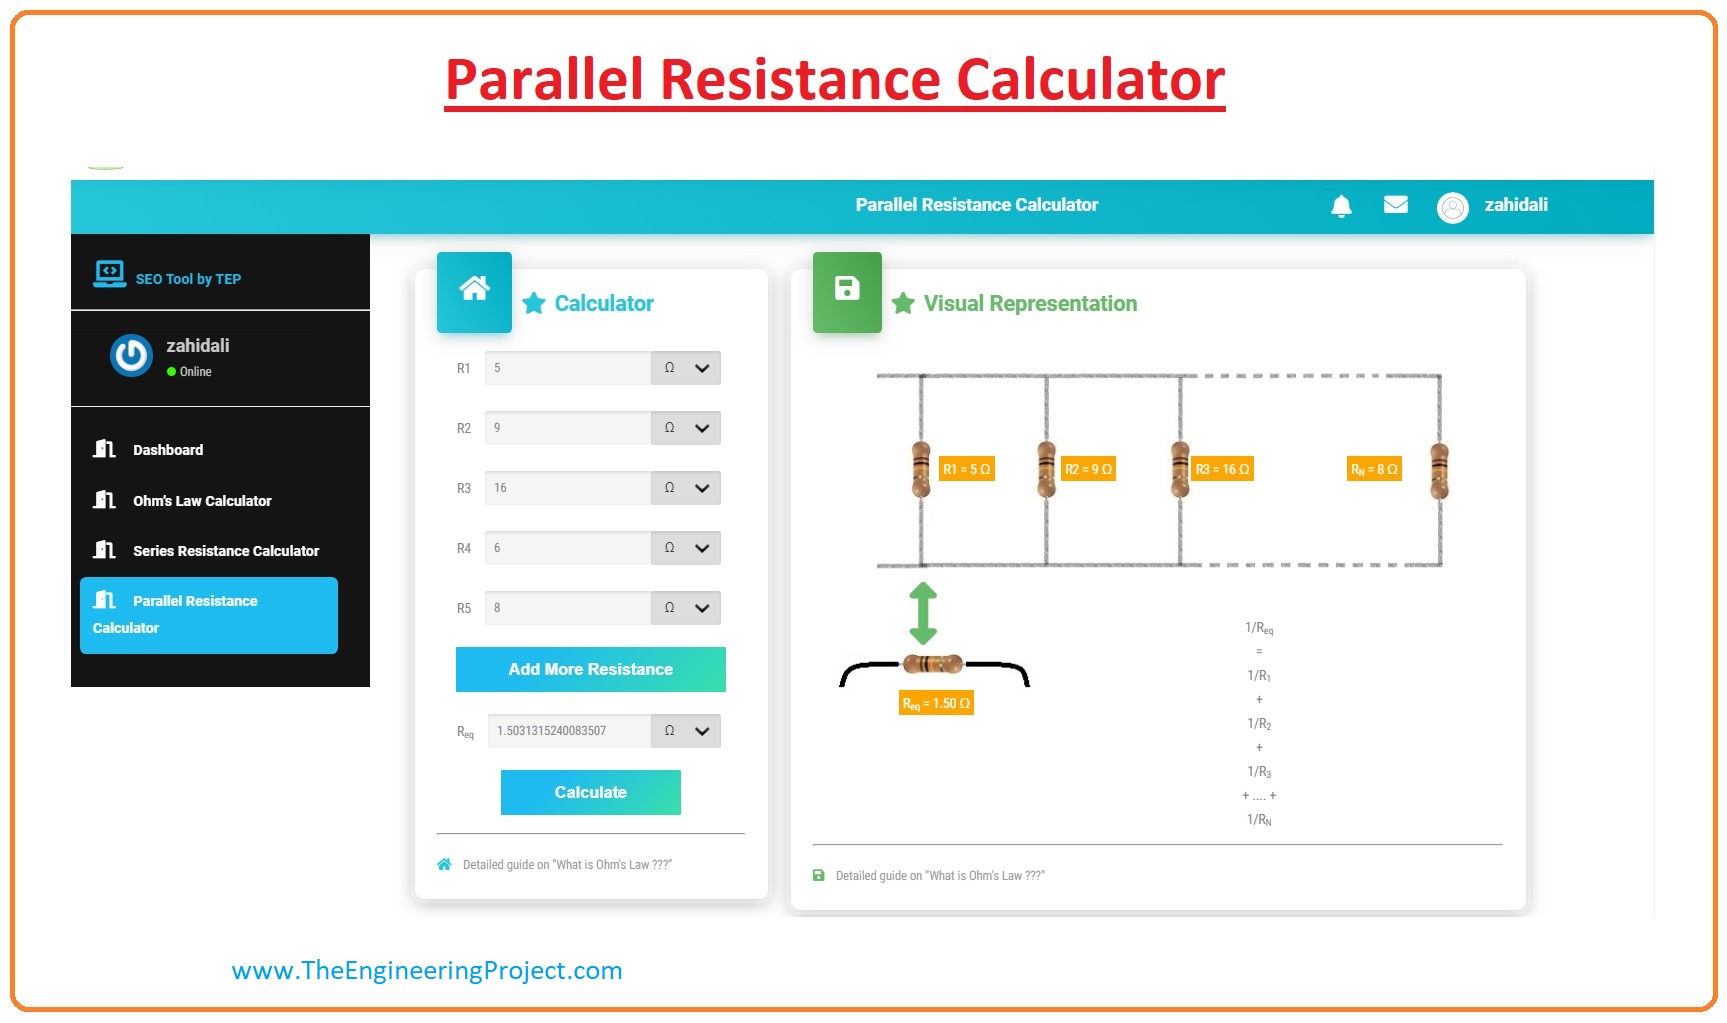 Resistance in parallel, Resistance in parallel working, Resistance in parallel applications, Resistance in parallel ohm's law, Resistance in parallel